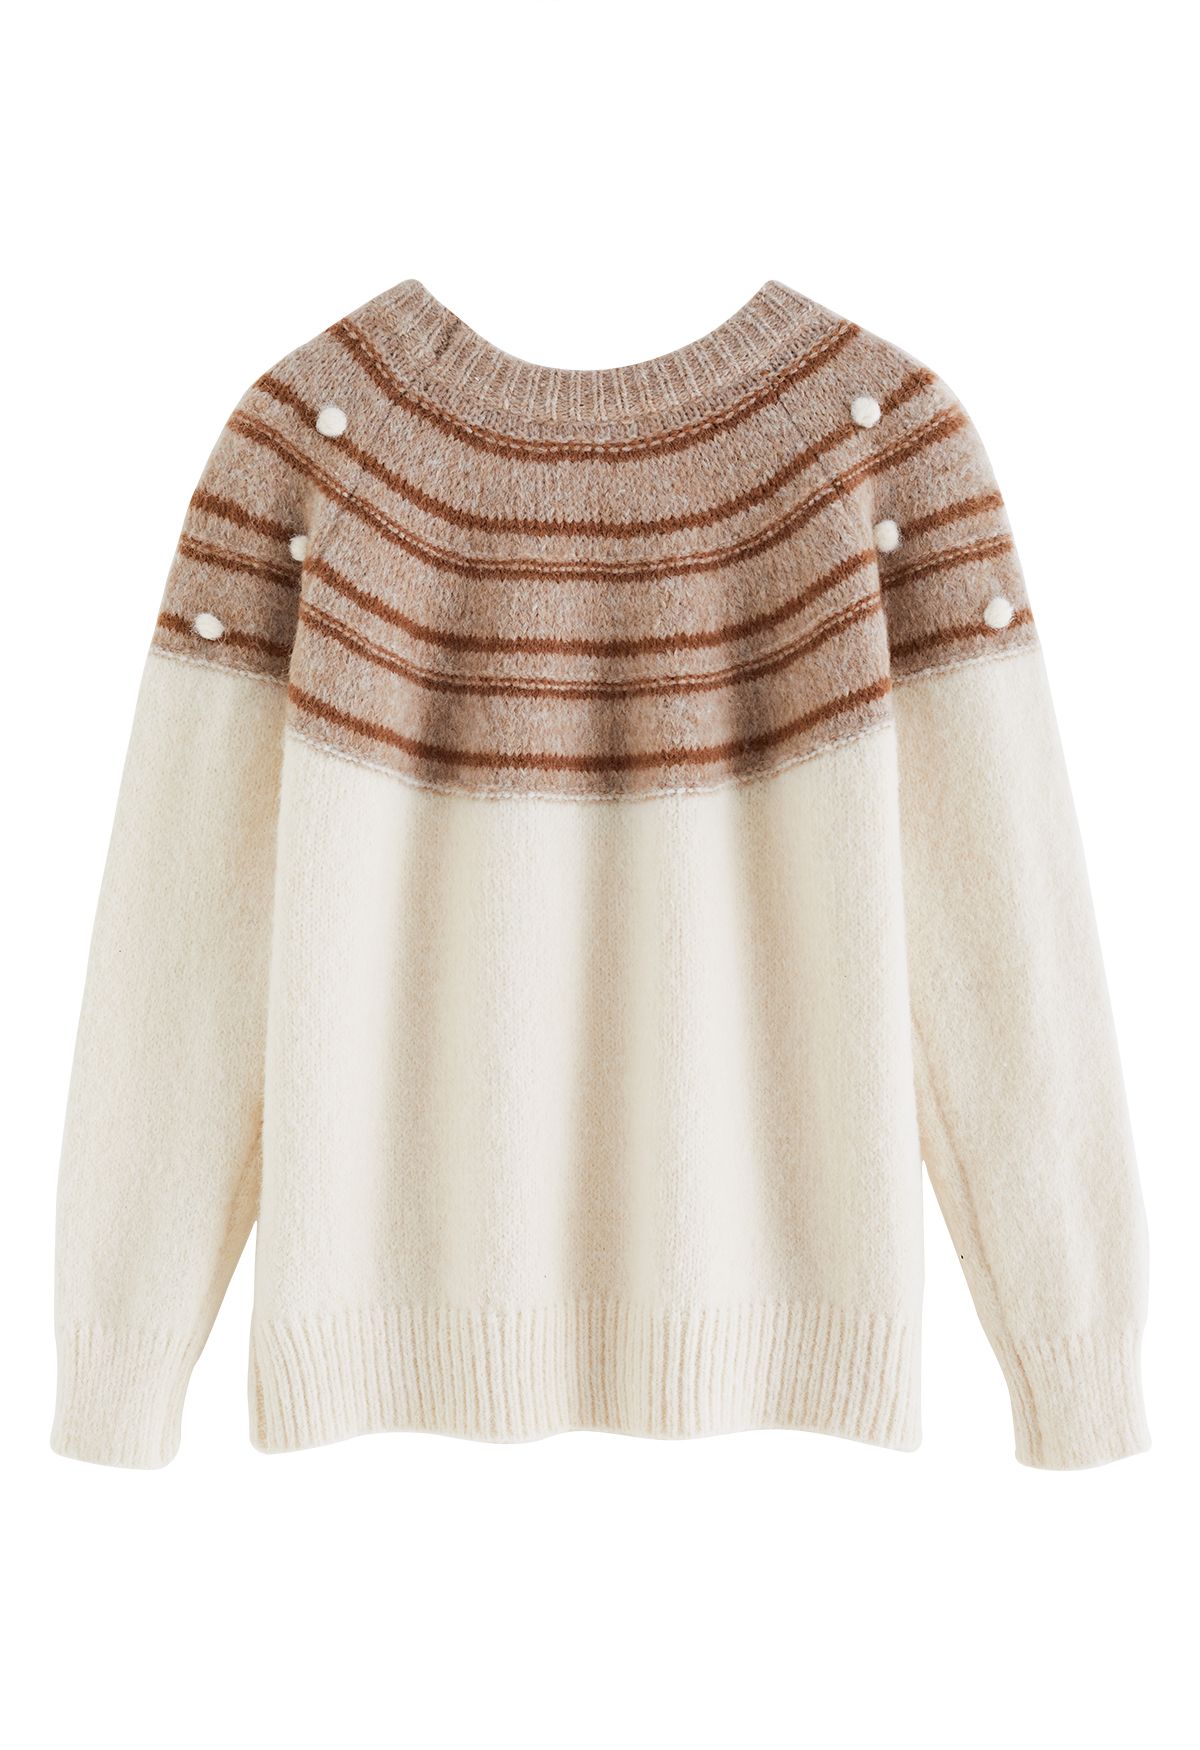 Pom-Pom Fuzzy Slouchy Knit Sweater in Cream